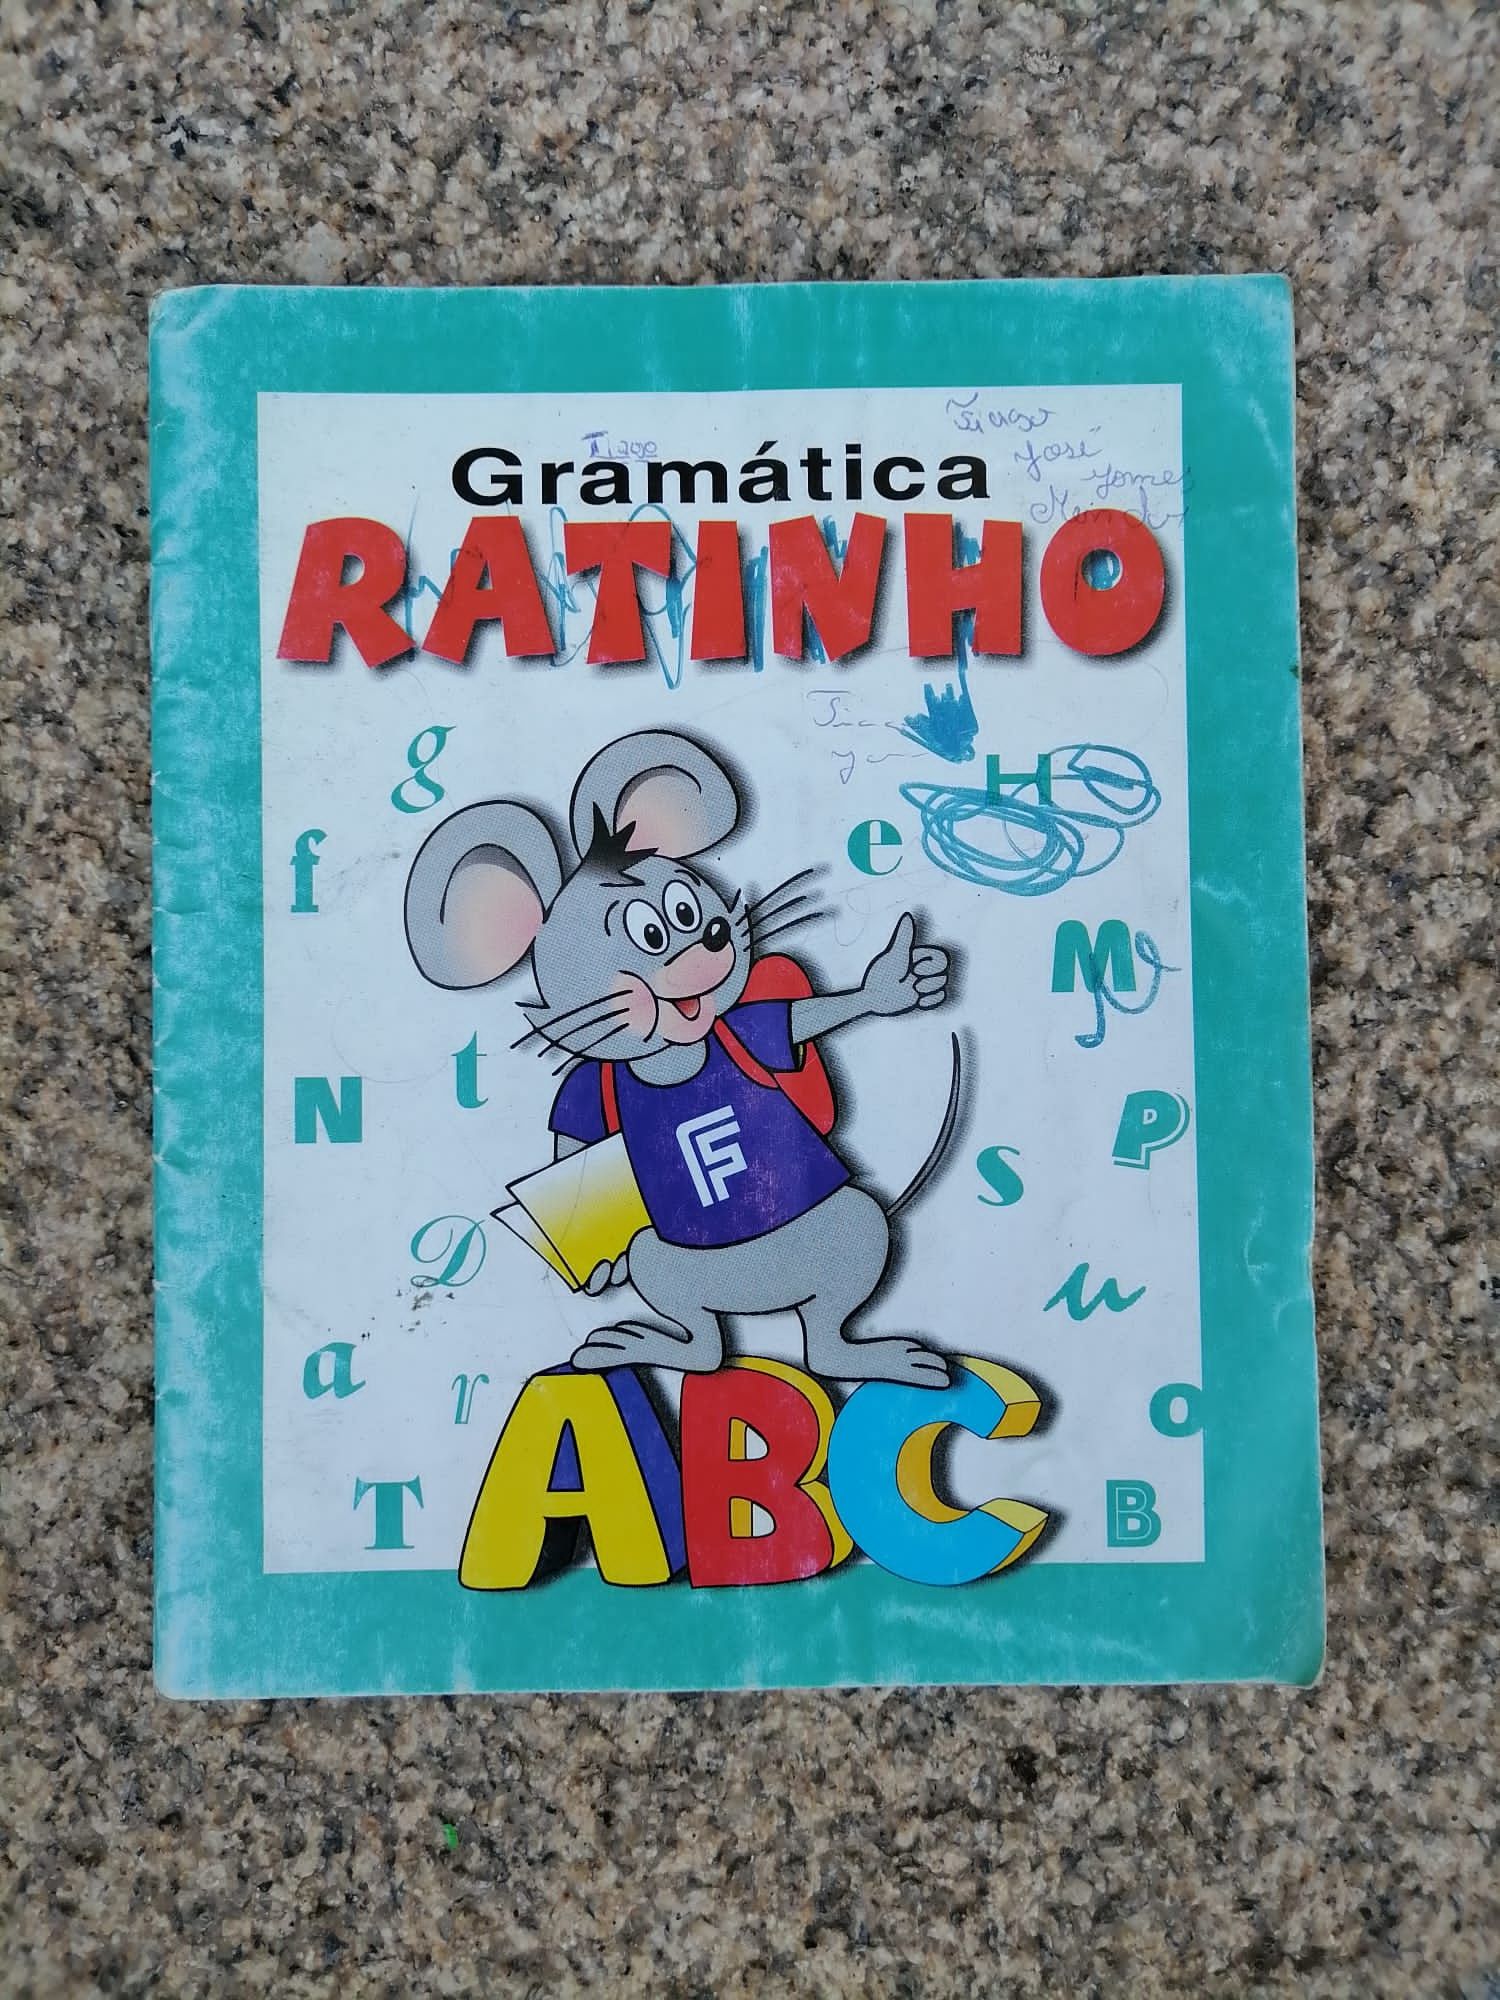 Livro de gramática português ratinho